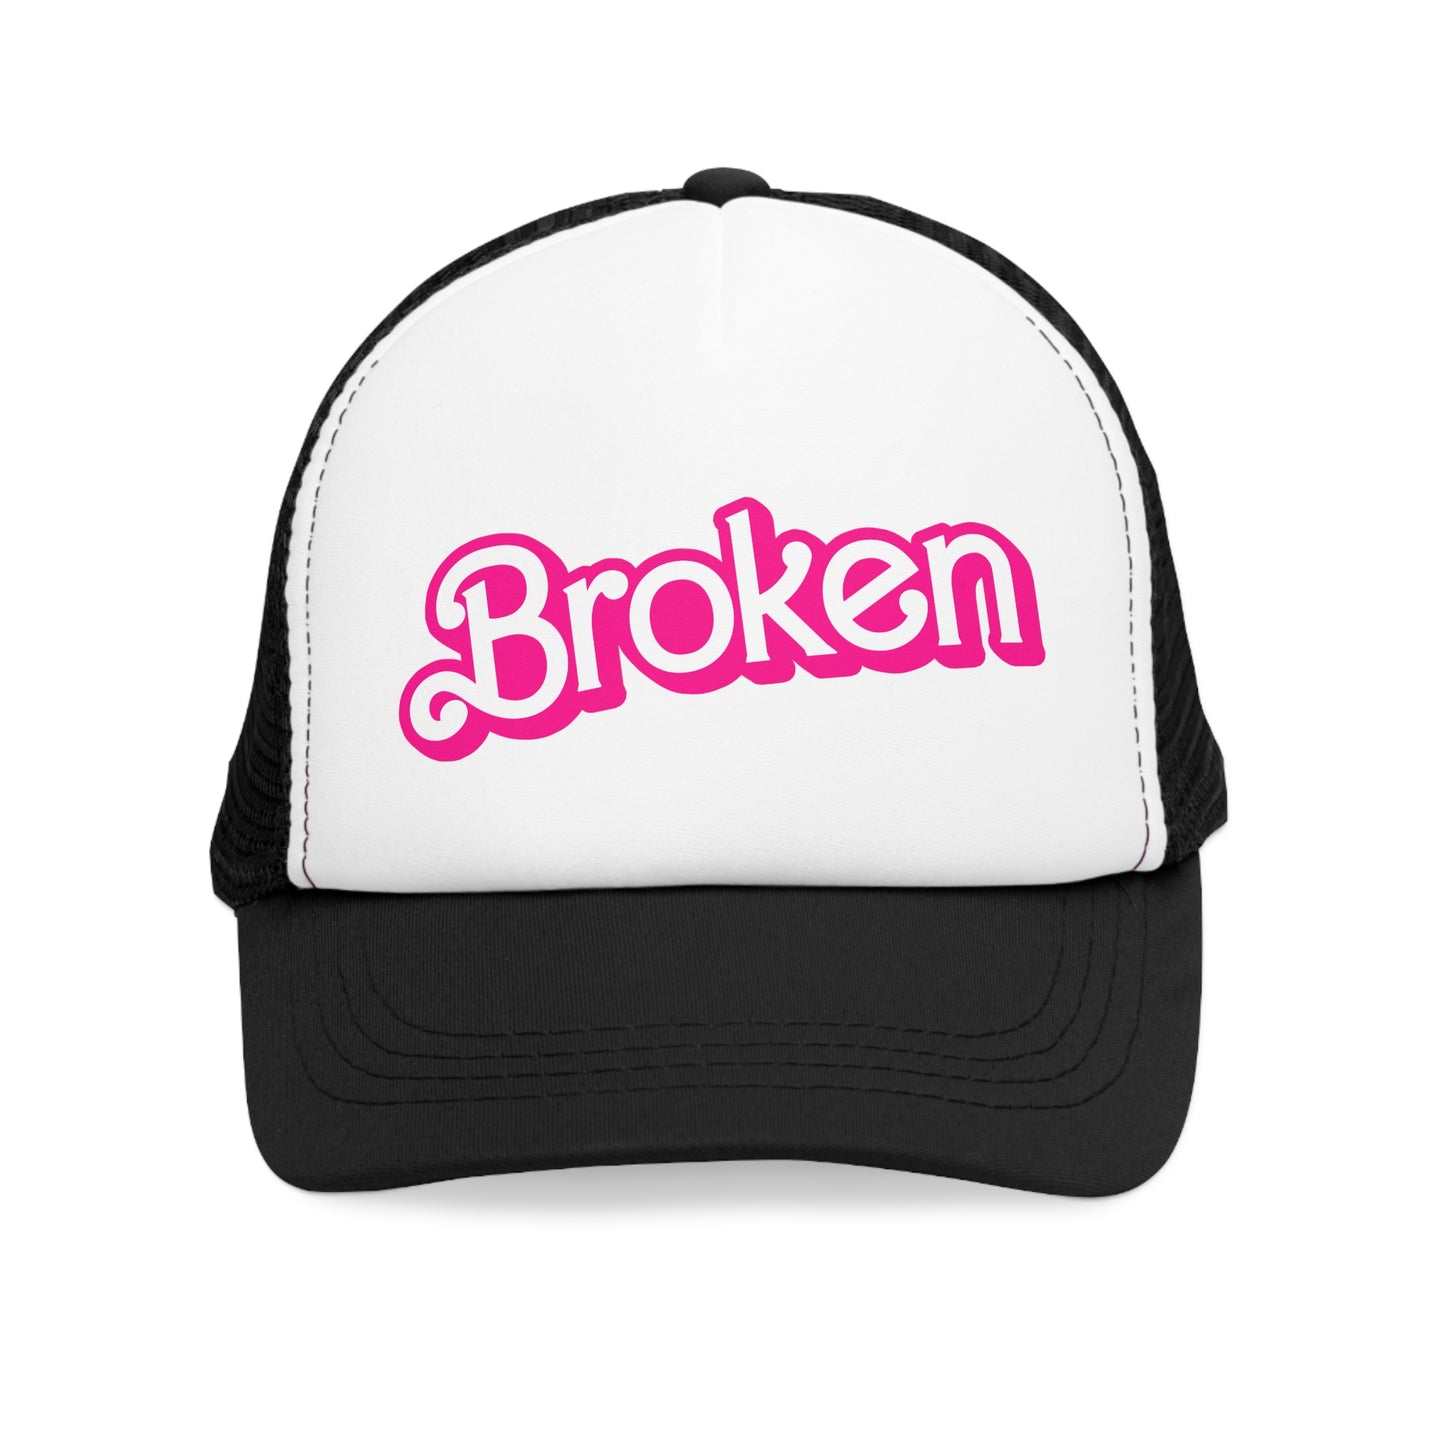 Broken Doll printed trucker hat